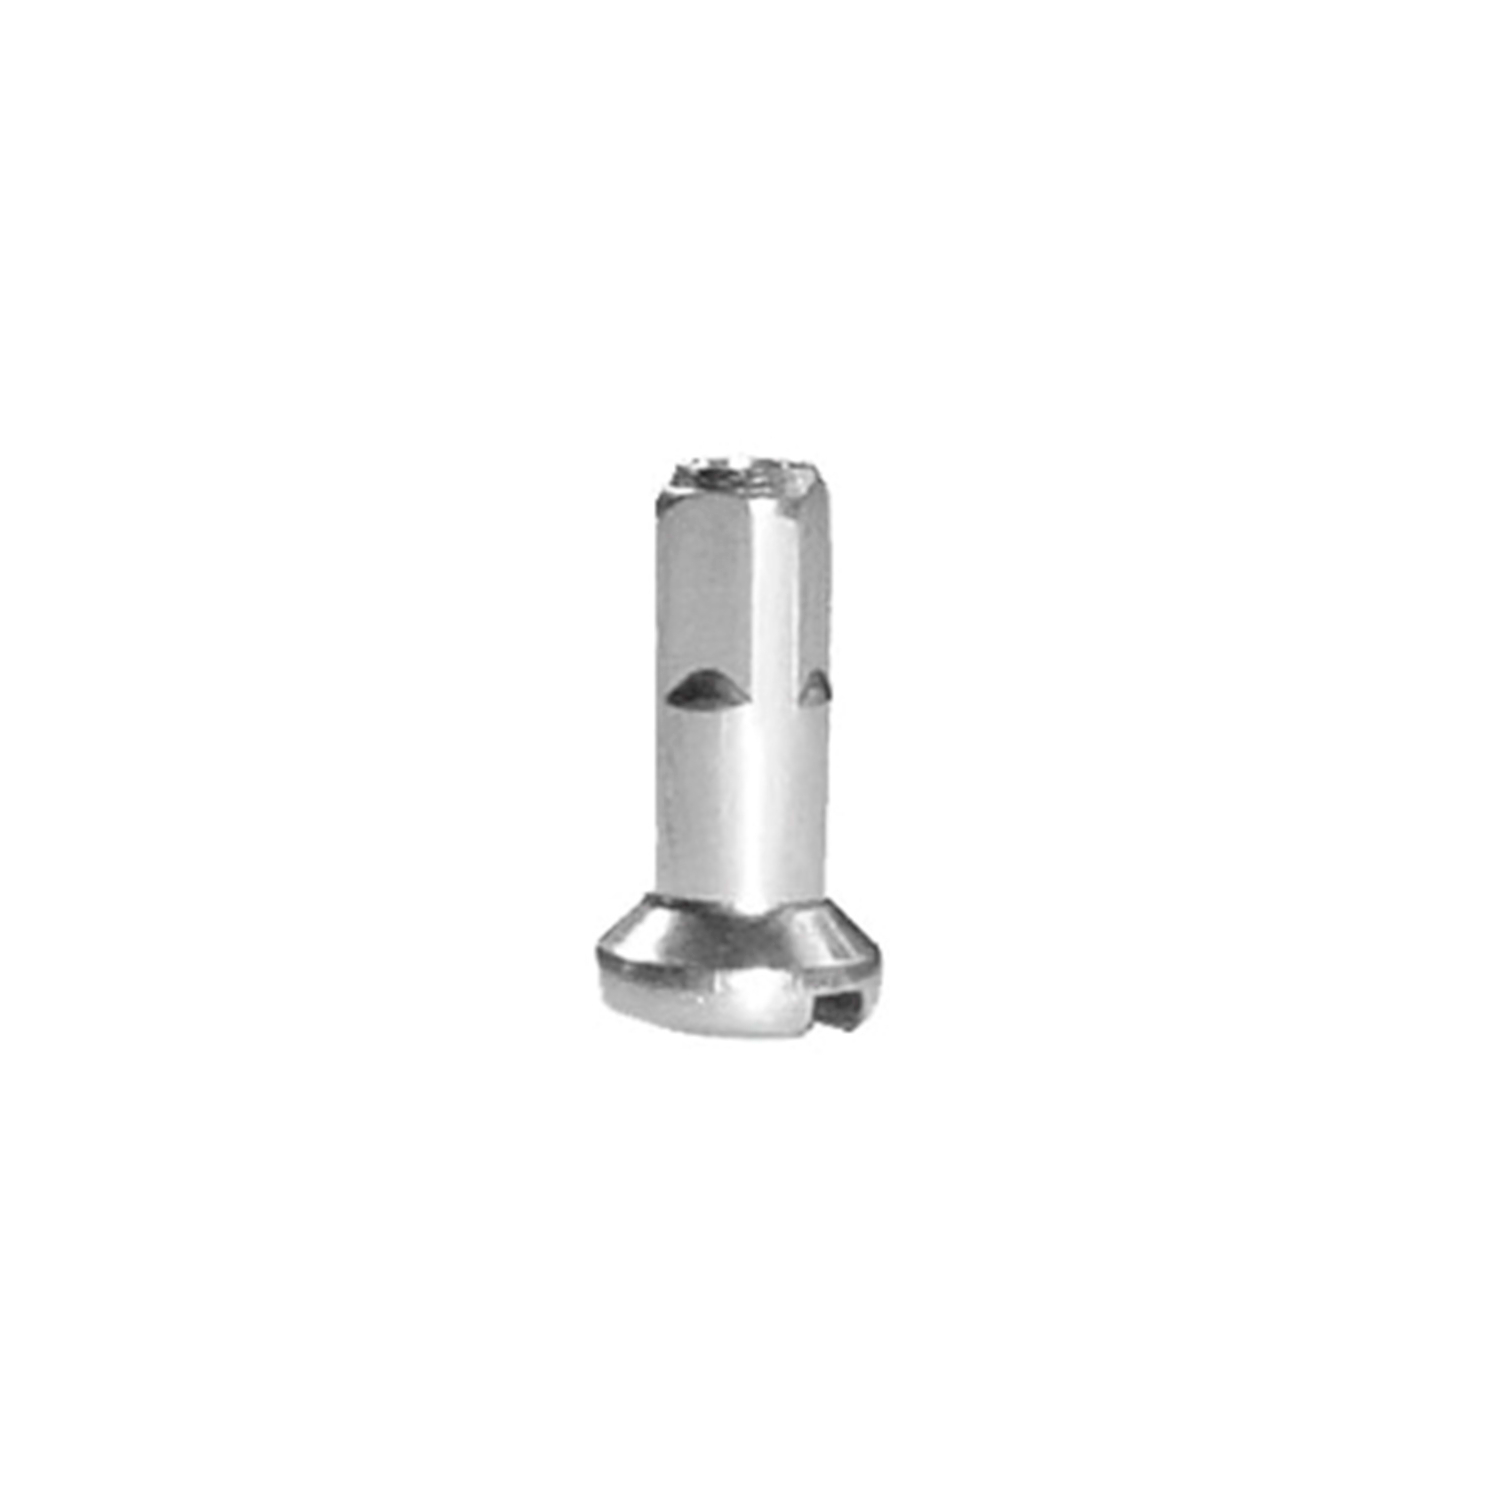 CN-Nippel Messing 14 mm für 2 mm Speichen in Silber